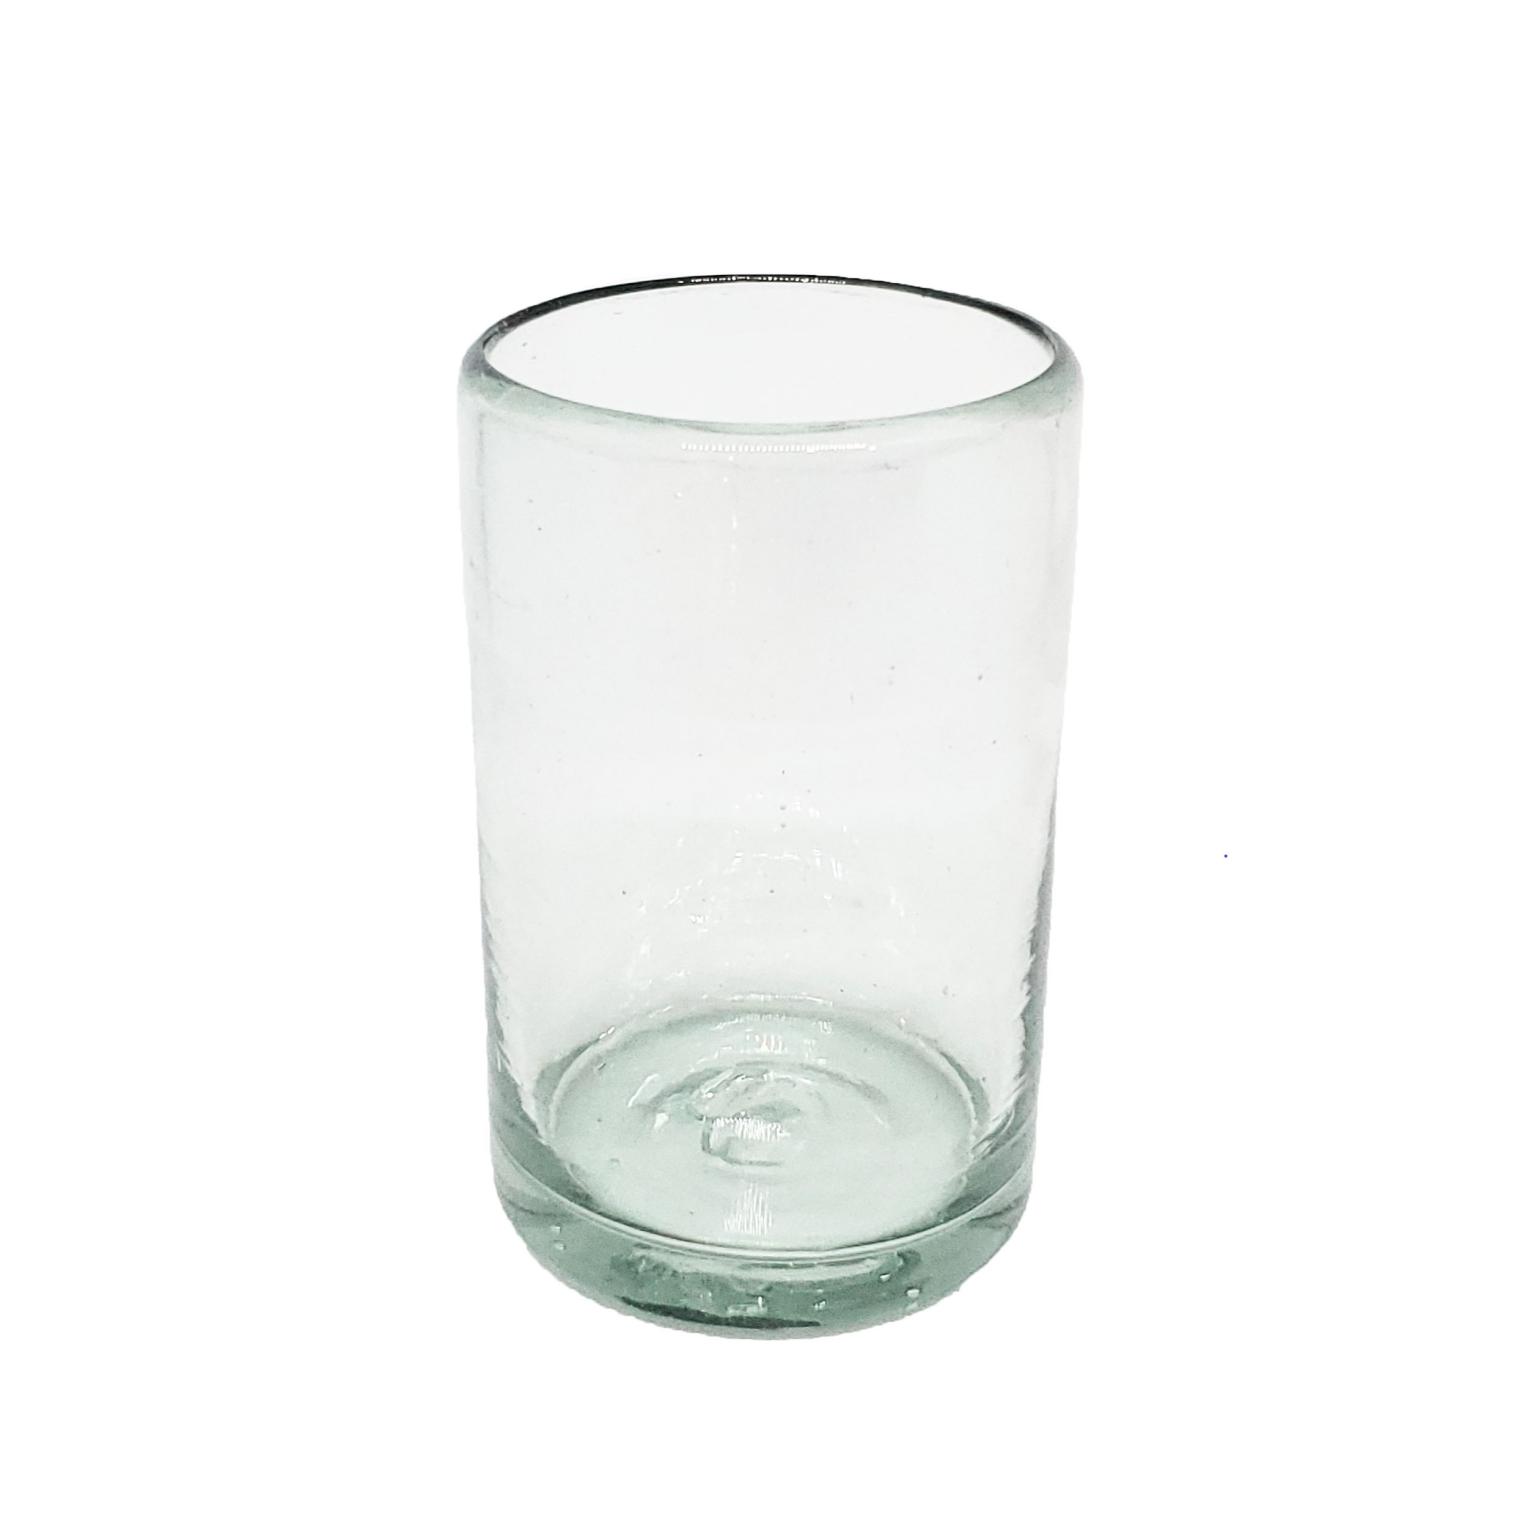 Color Transparente al Mayoreo / vasos Jugo 9oz Transparentes / Éstos artesanales vasos le darán un toque clásico a su bebida favorita.